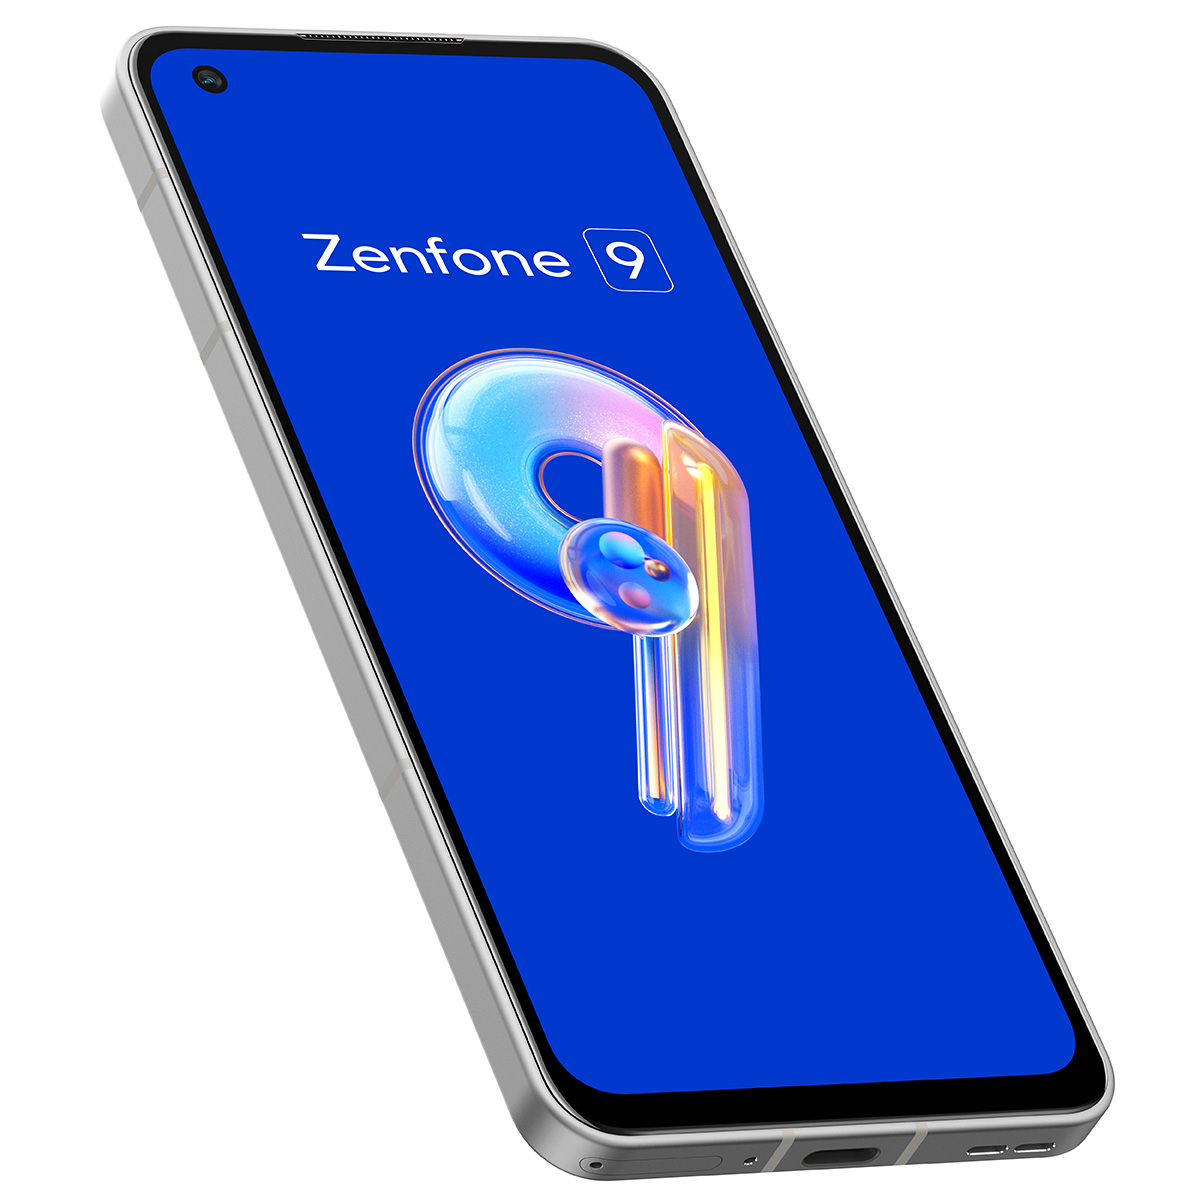 Zenfone 9 ムーンライト ホワイト 8G/256GB